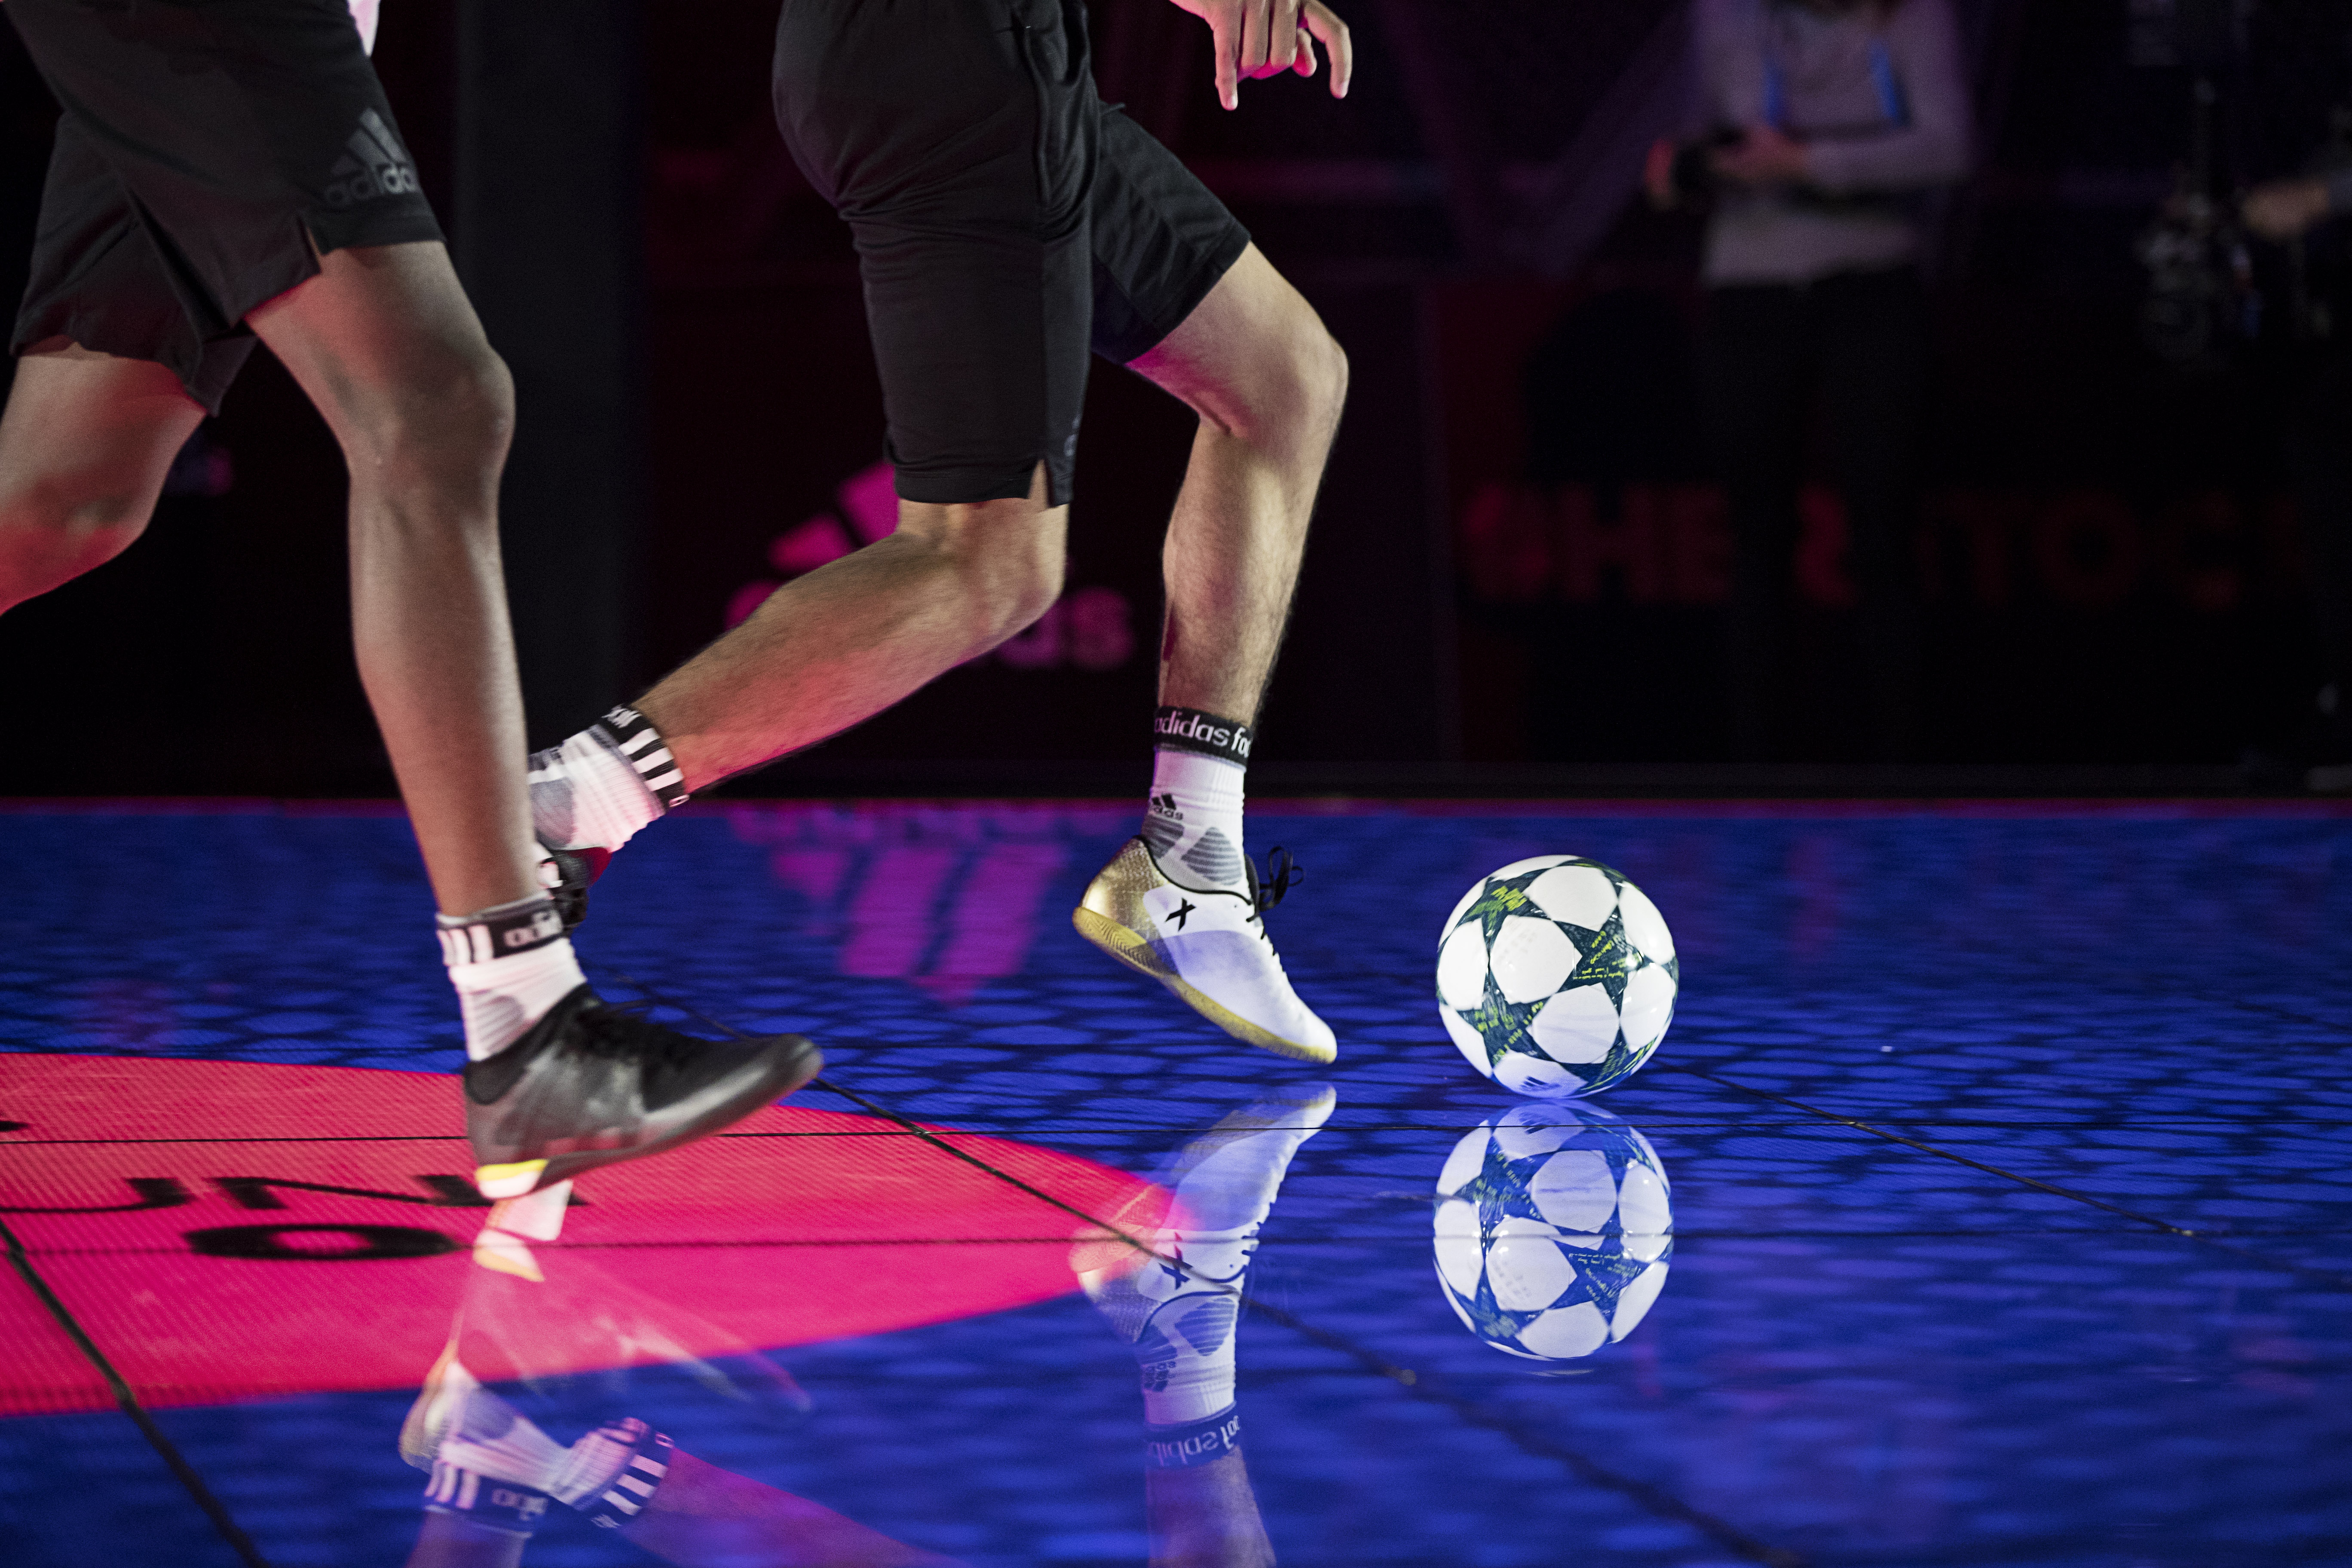 Creators Arena, adidas a créé le sport du futur et révèle les talents de demain